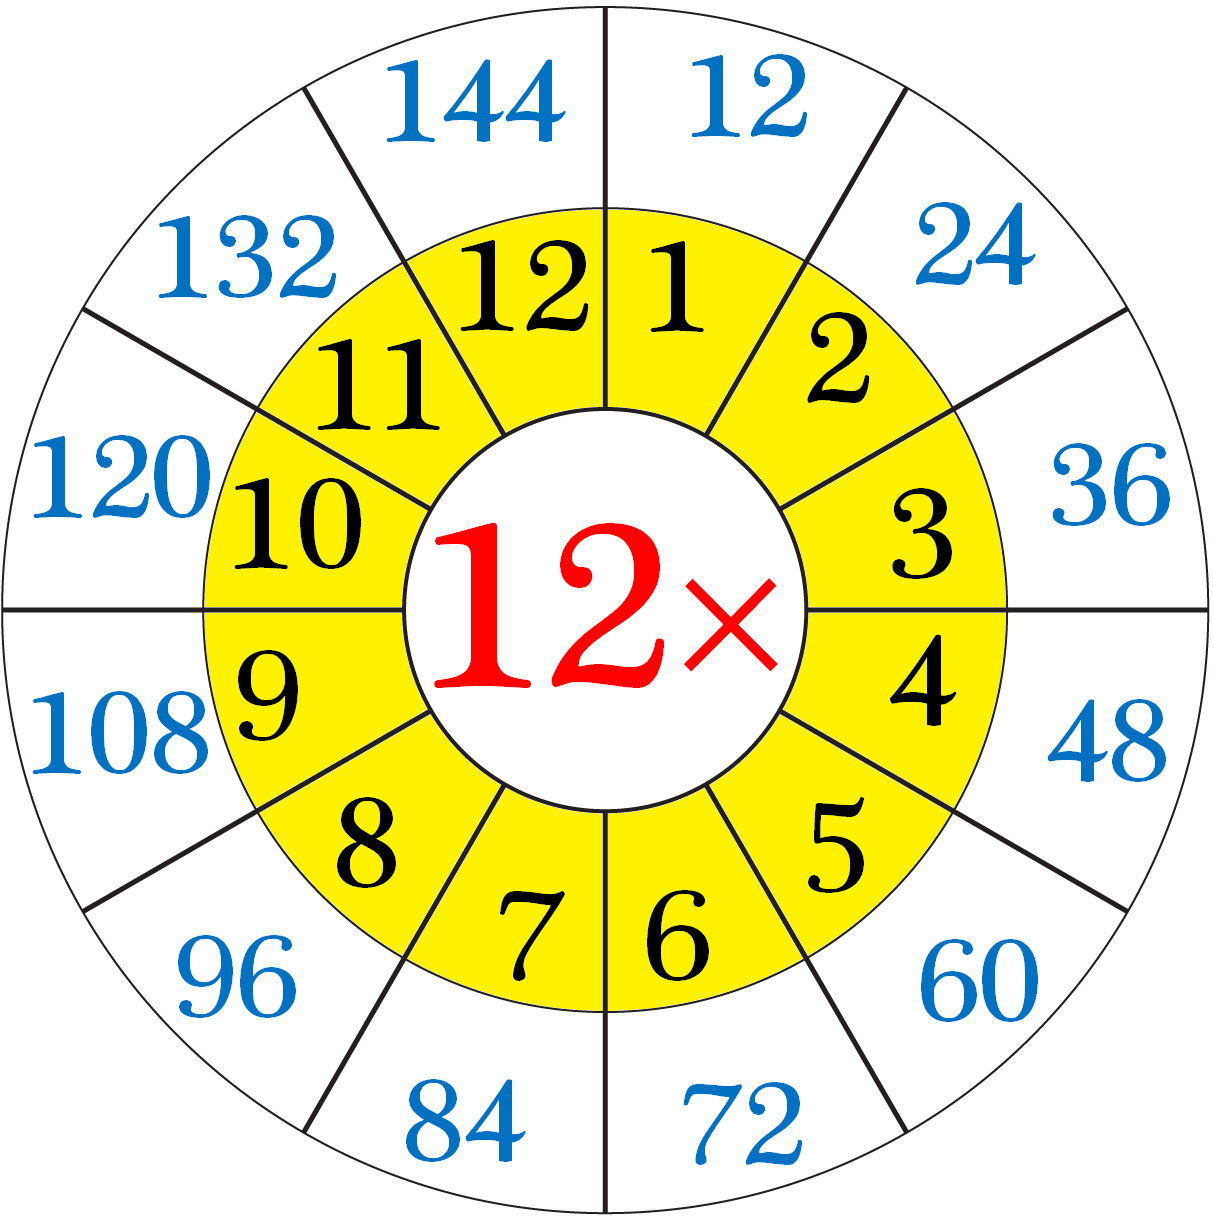 Multiplication Table of Twelve